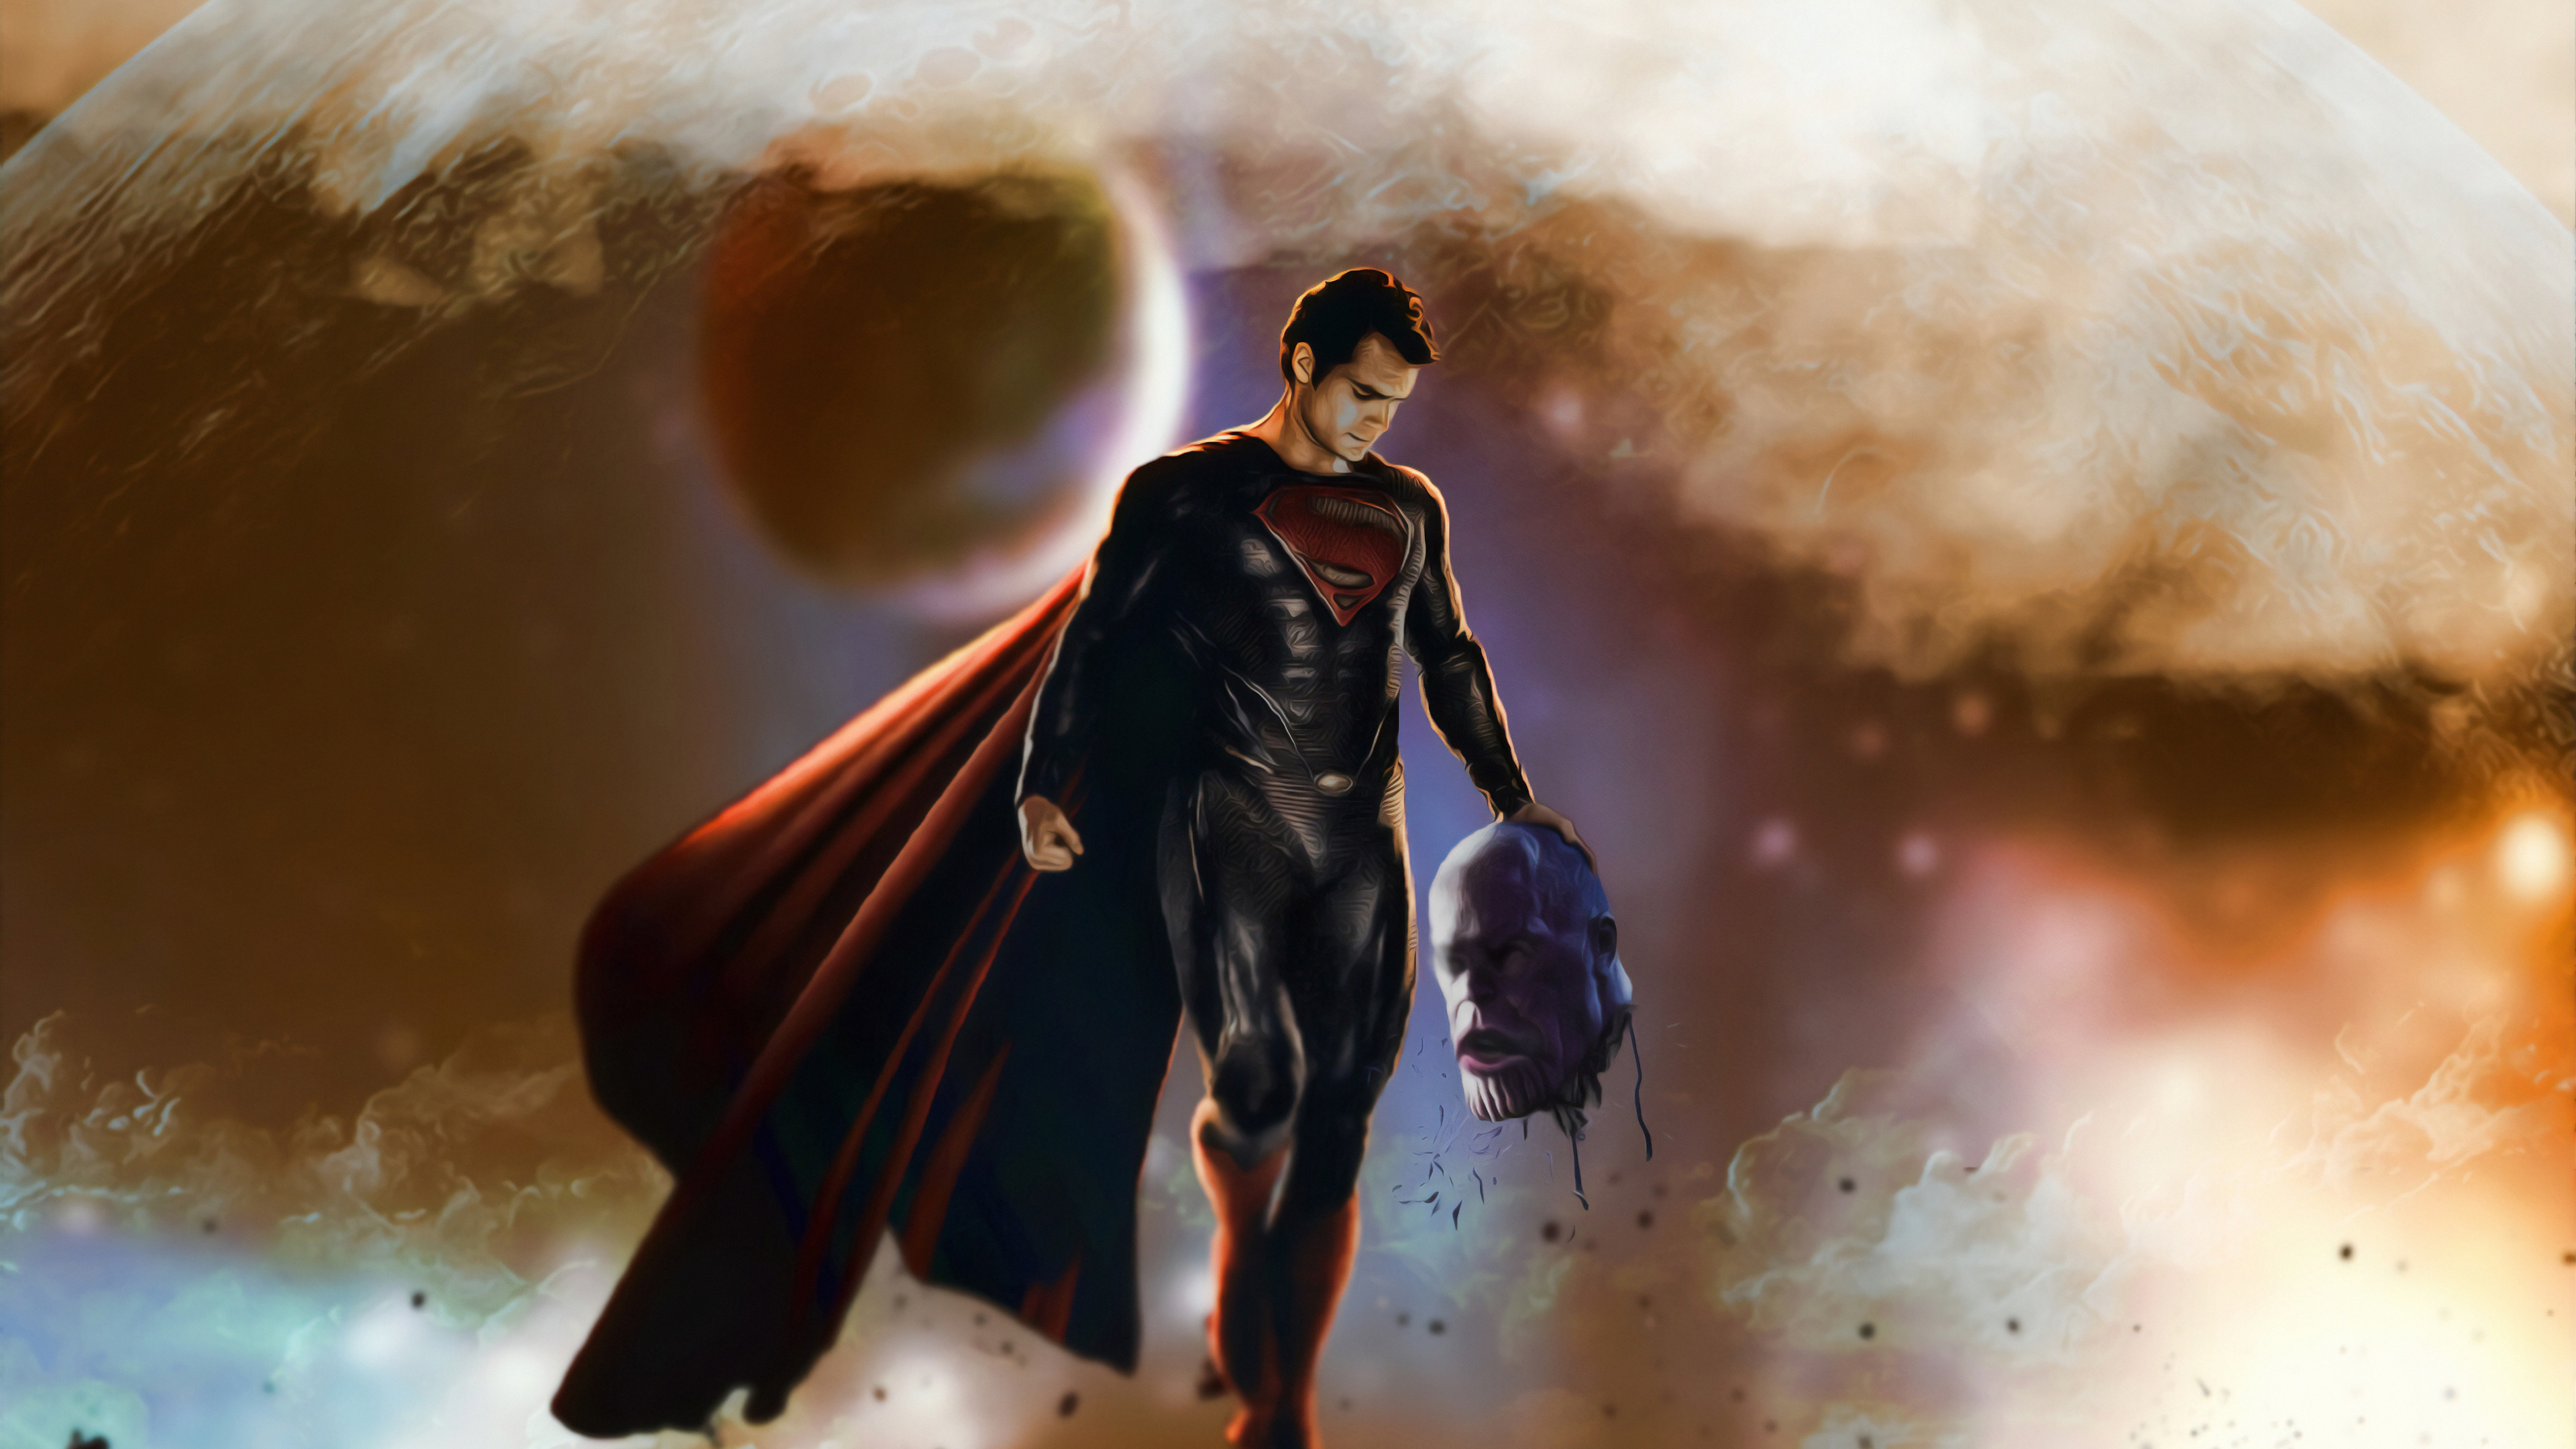 スーパーマンの壁紙,スーパーヒーロー,架空の人物,バットマン,スーパーマン,cgアートワーク